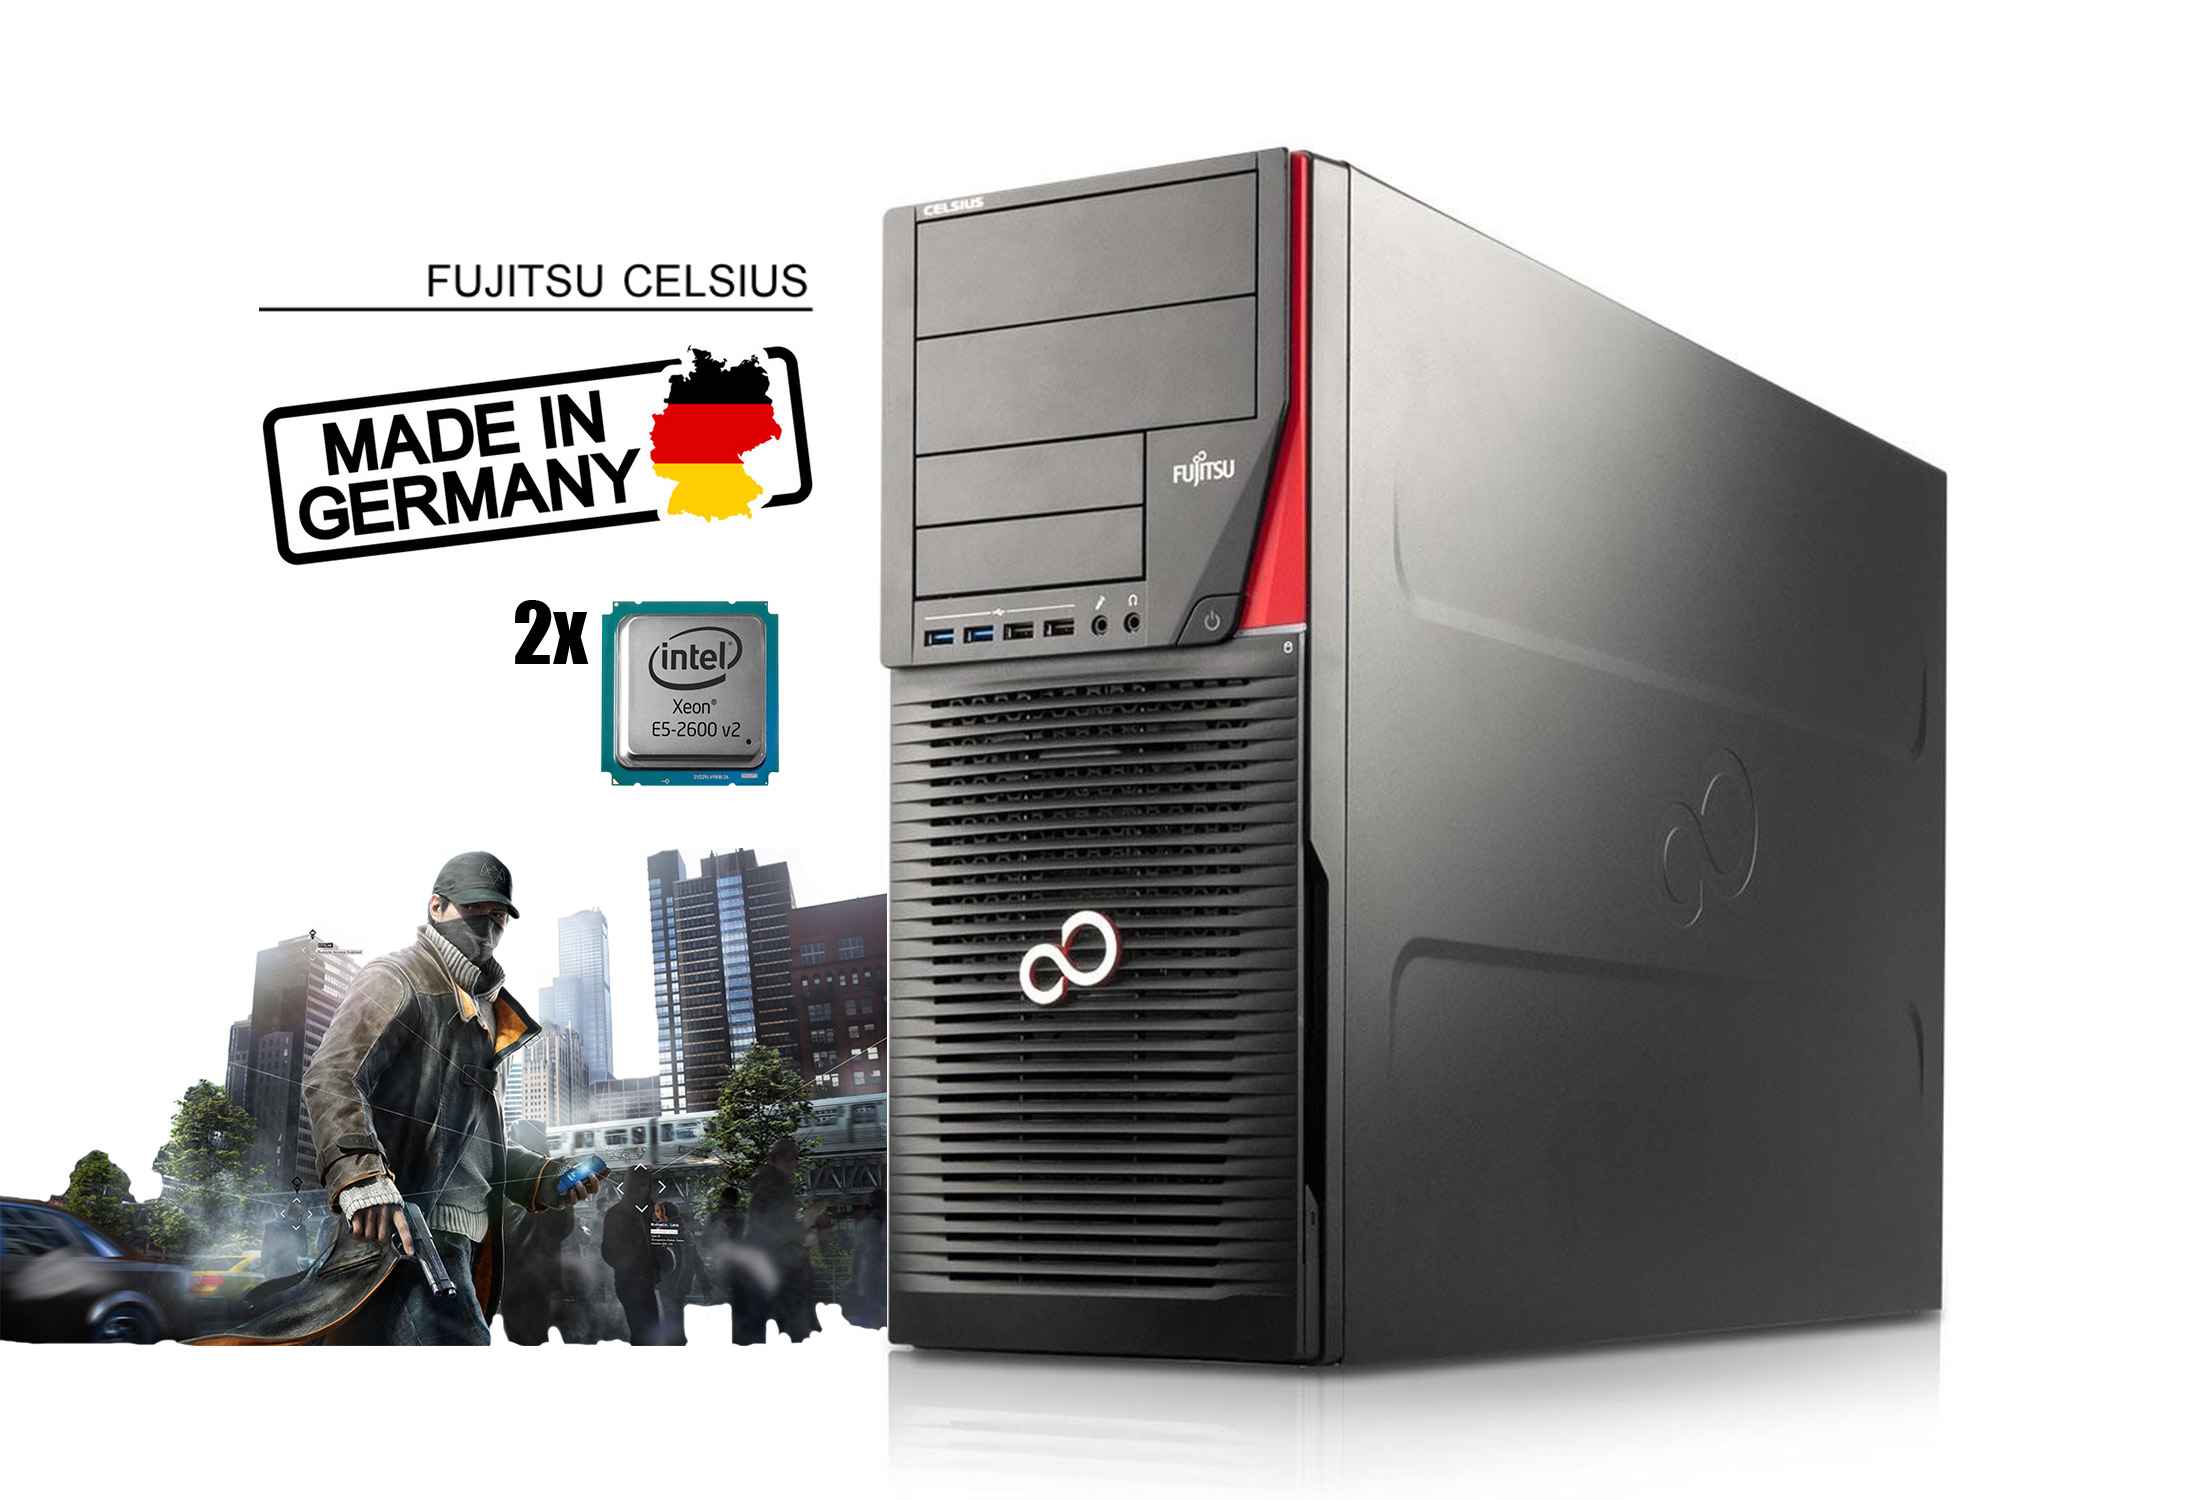 Fujitsu Celsius R930 Power 2x Xeon E5-2643 v2 64GB RAM SSD GTX 1060